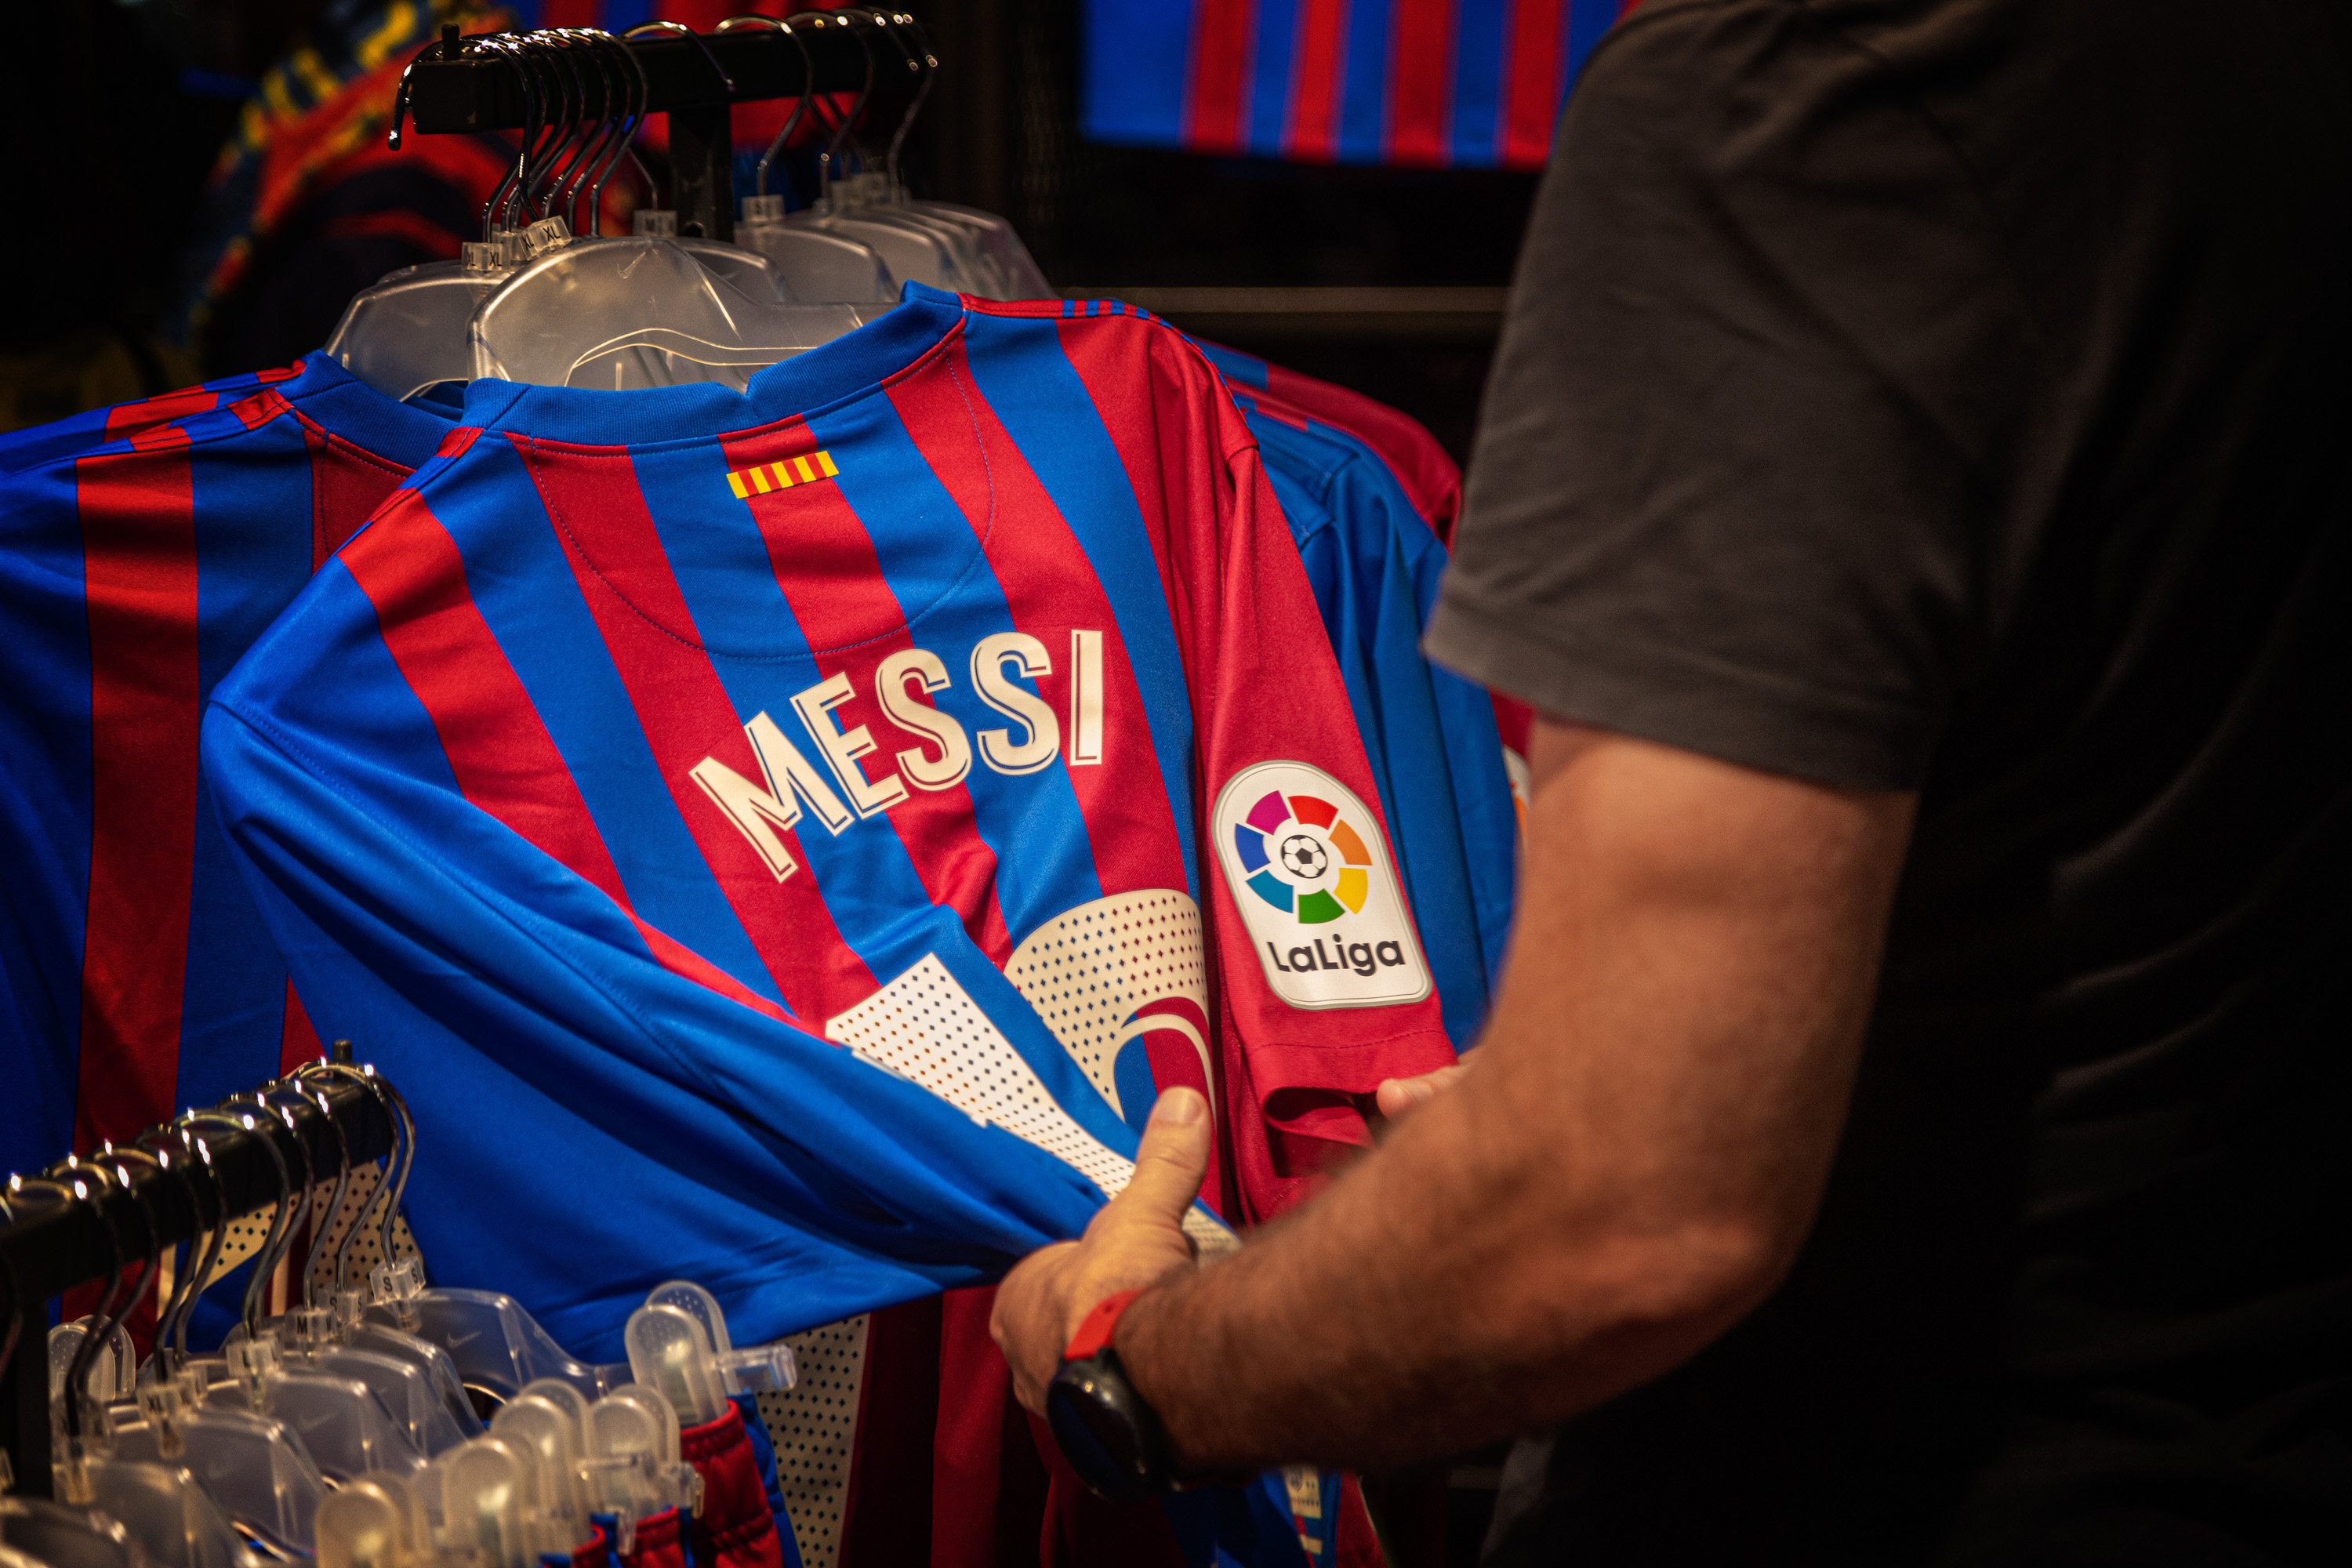 Qui serà l'hereu del 10 de Messi al Barça? Tres opcions diferents sobre la taula